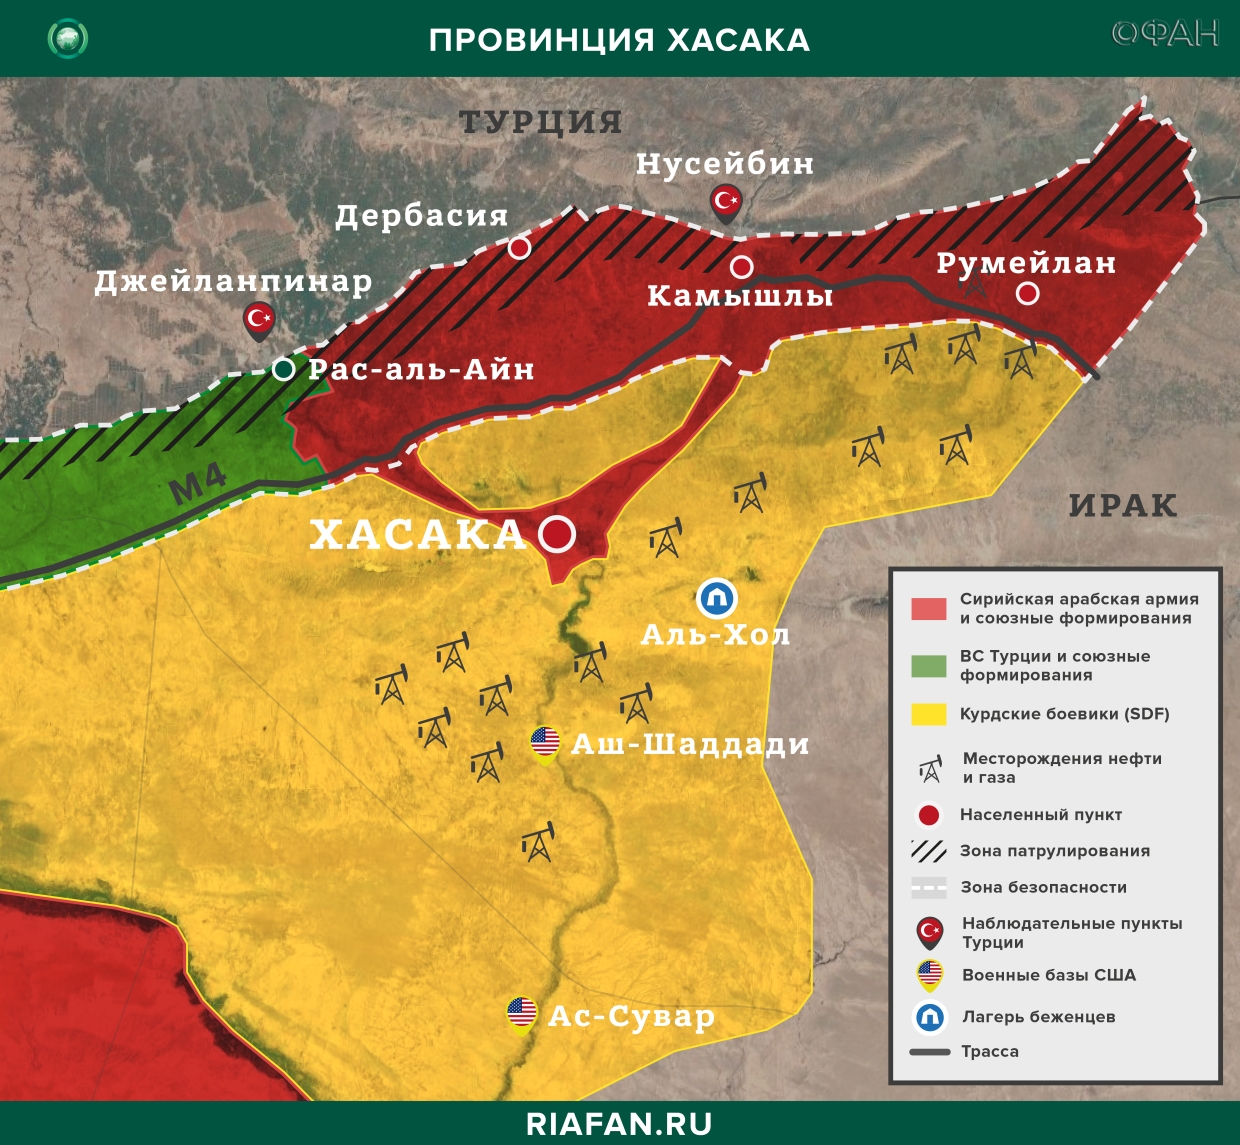 Сирия новости 8 марта 22.30: курдские боевики обстреляли мирных демонстрантов в Дейр-эз-Зоре, атака на блокпост SDF в Хасаке